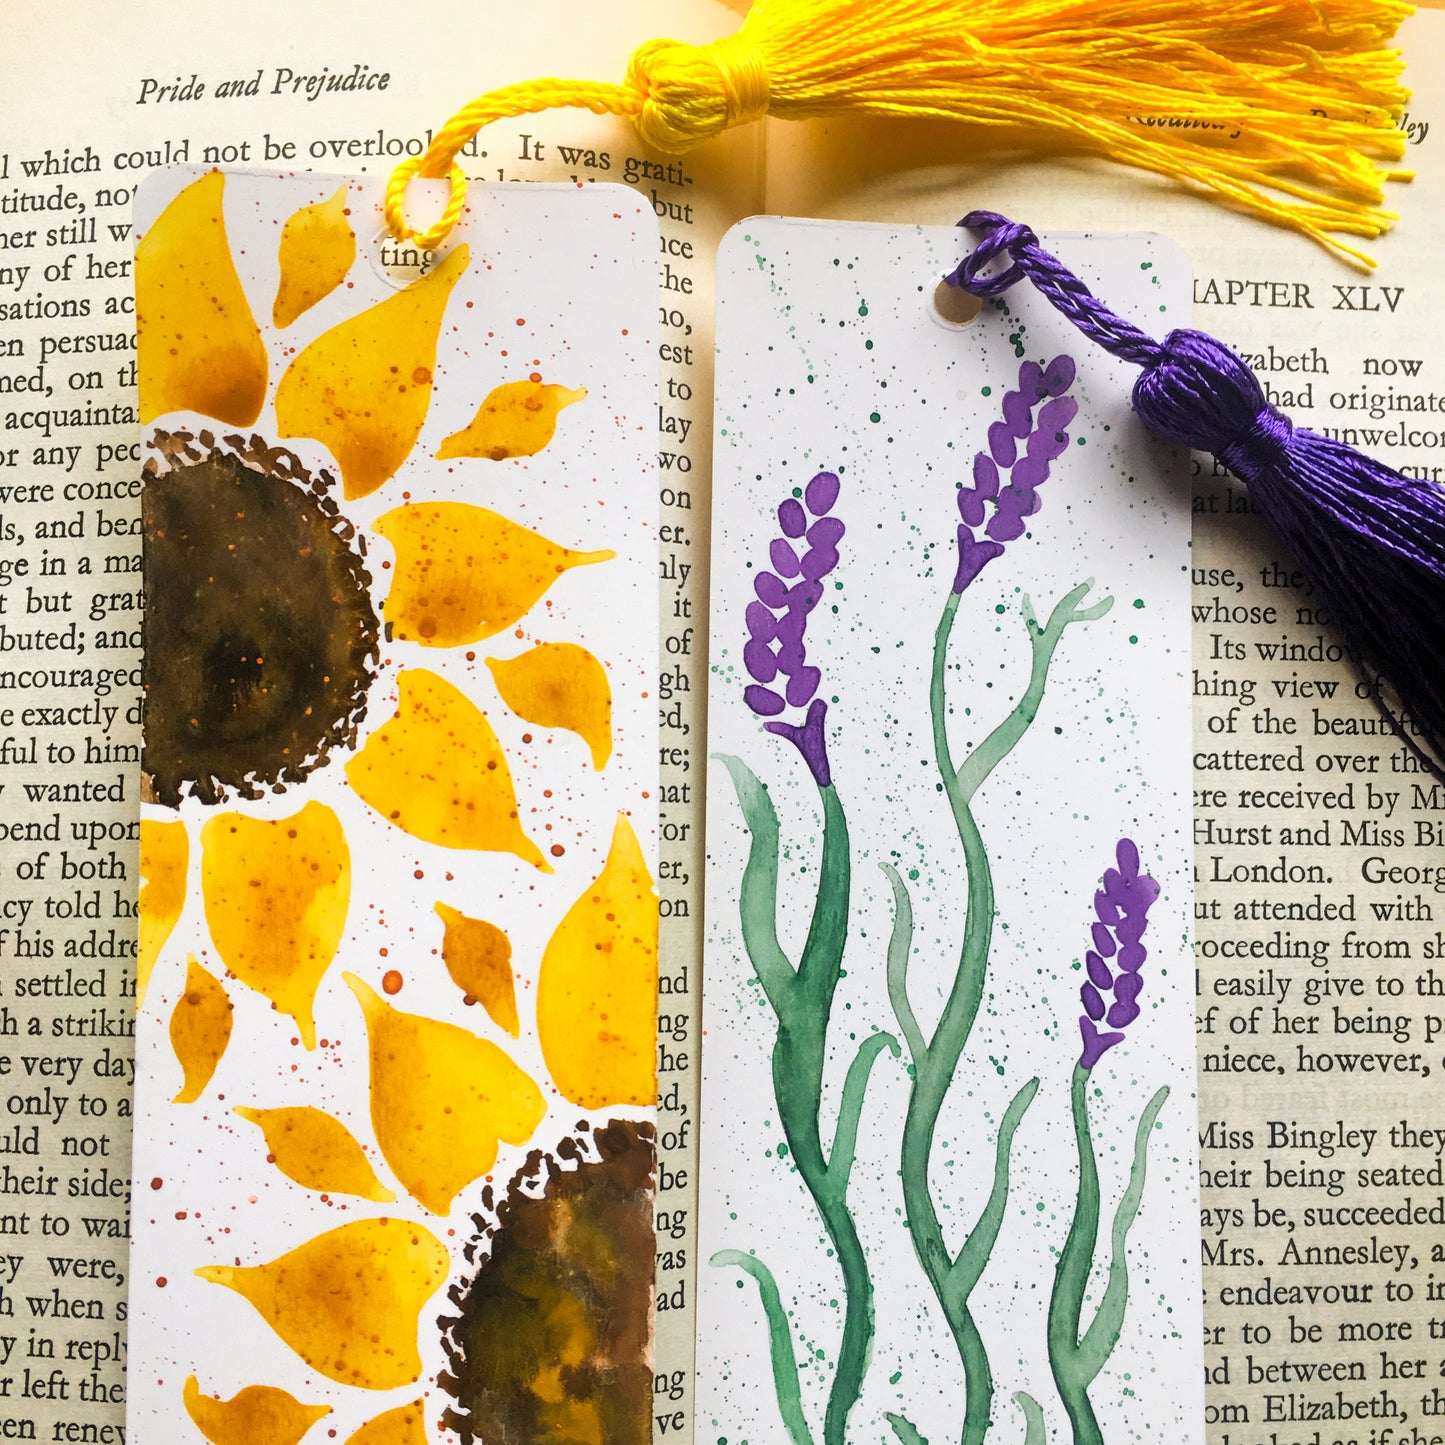 The Sunflower Handpainted Bookmark